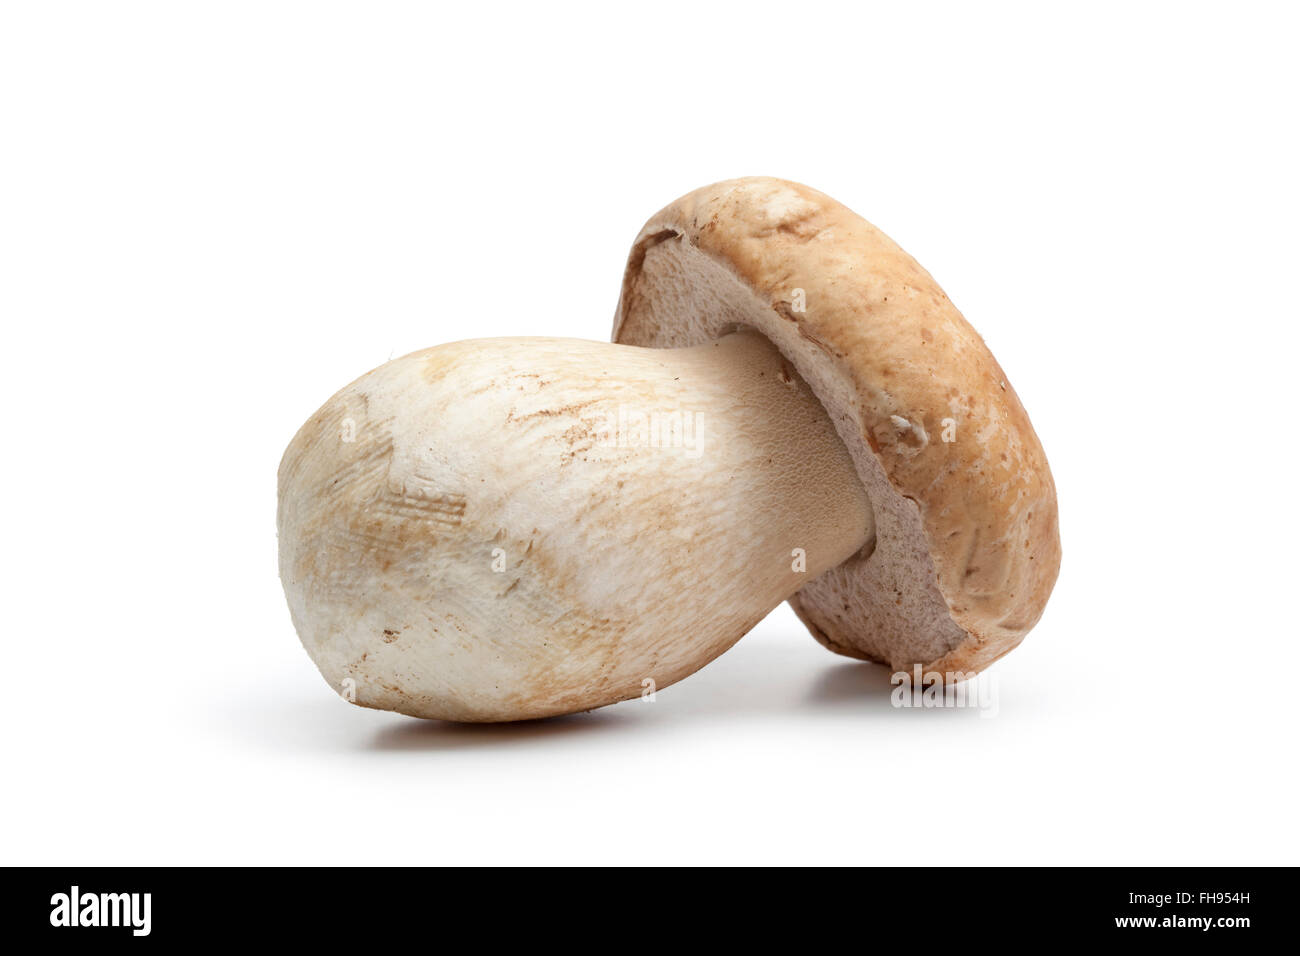 Tutta la singola crudo fresco funghi porcini isolati su sfondo bianco Foto Stock